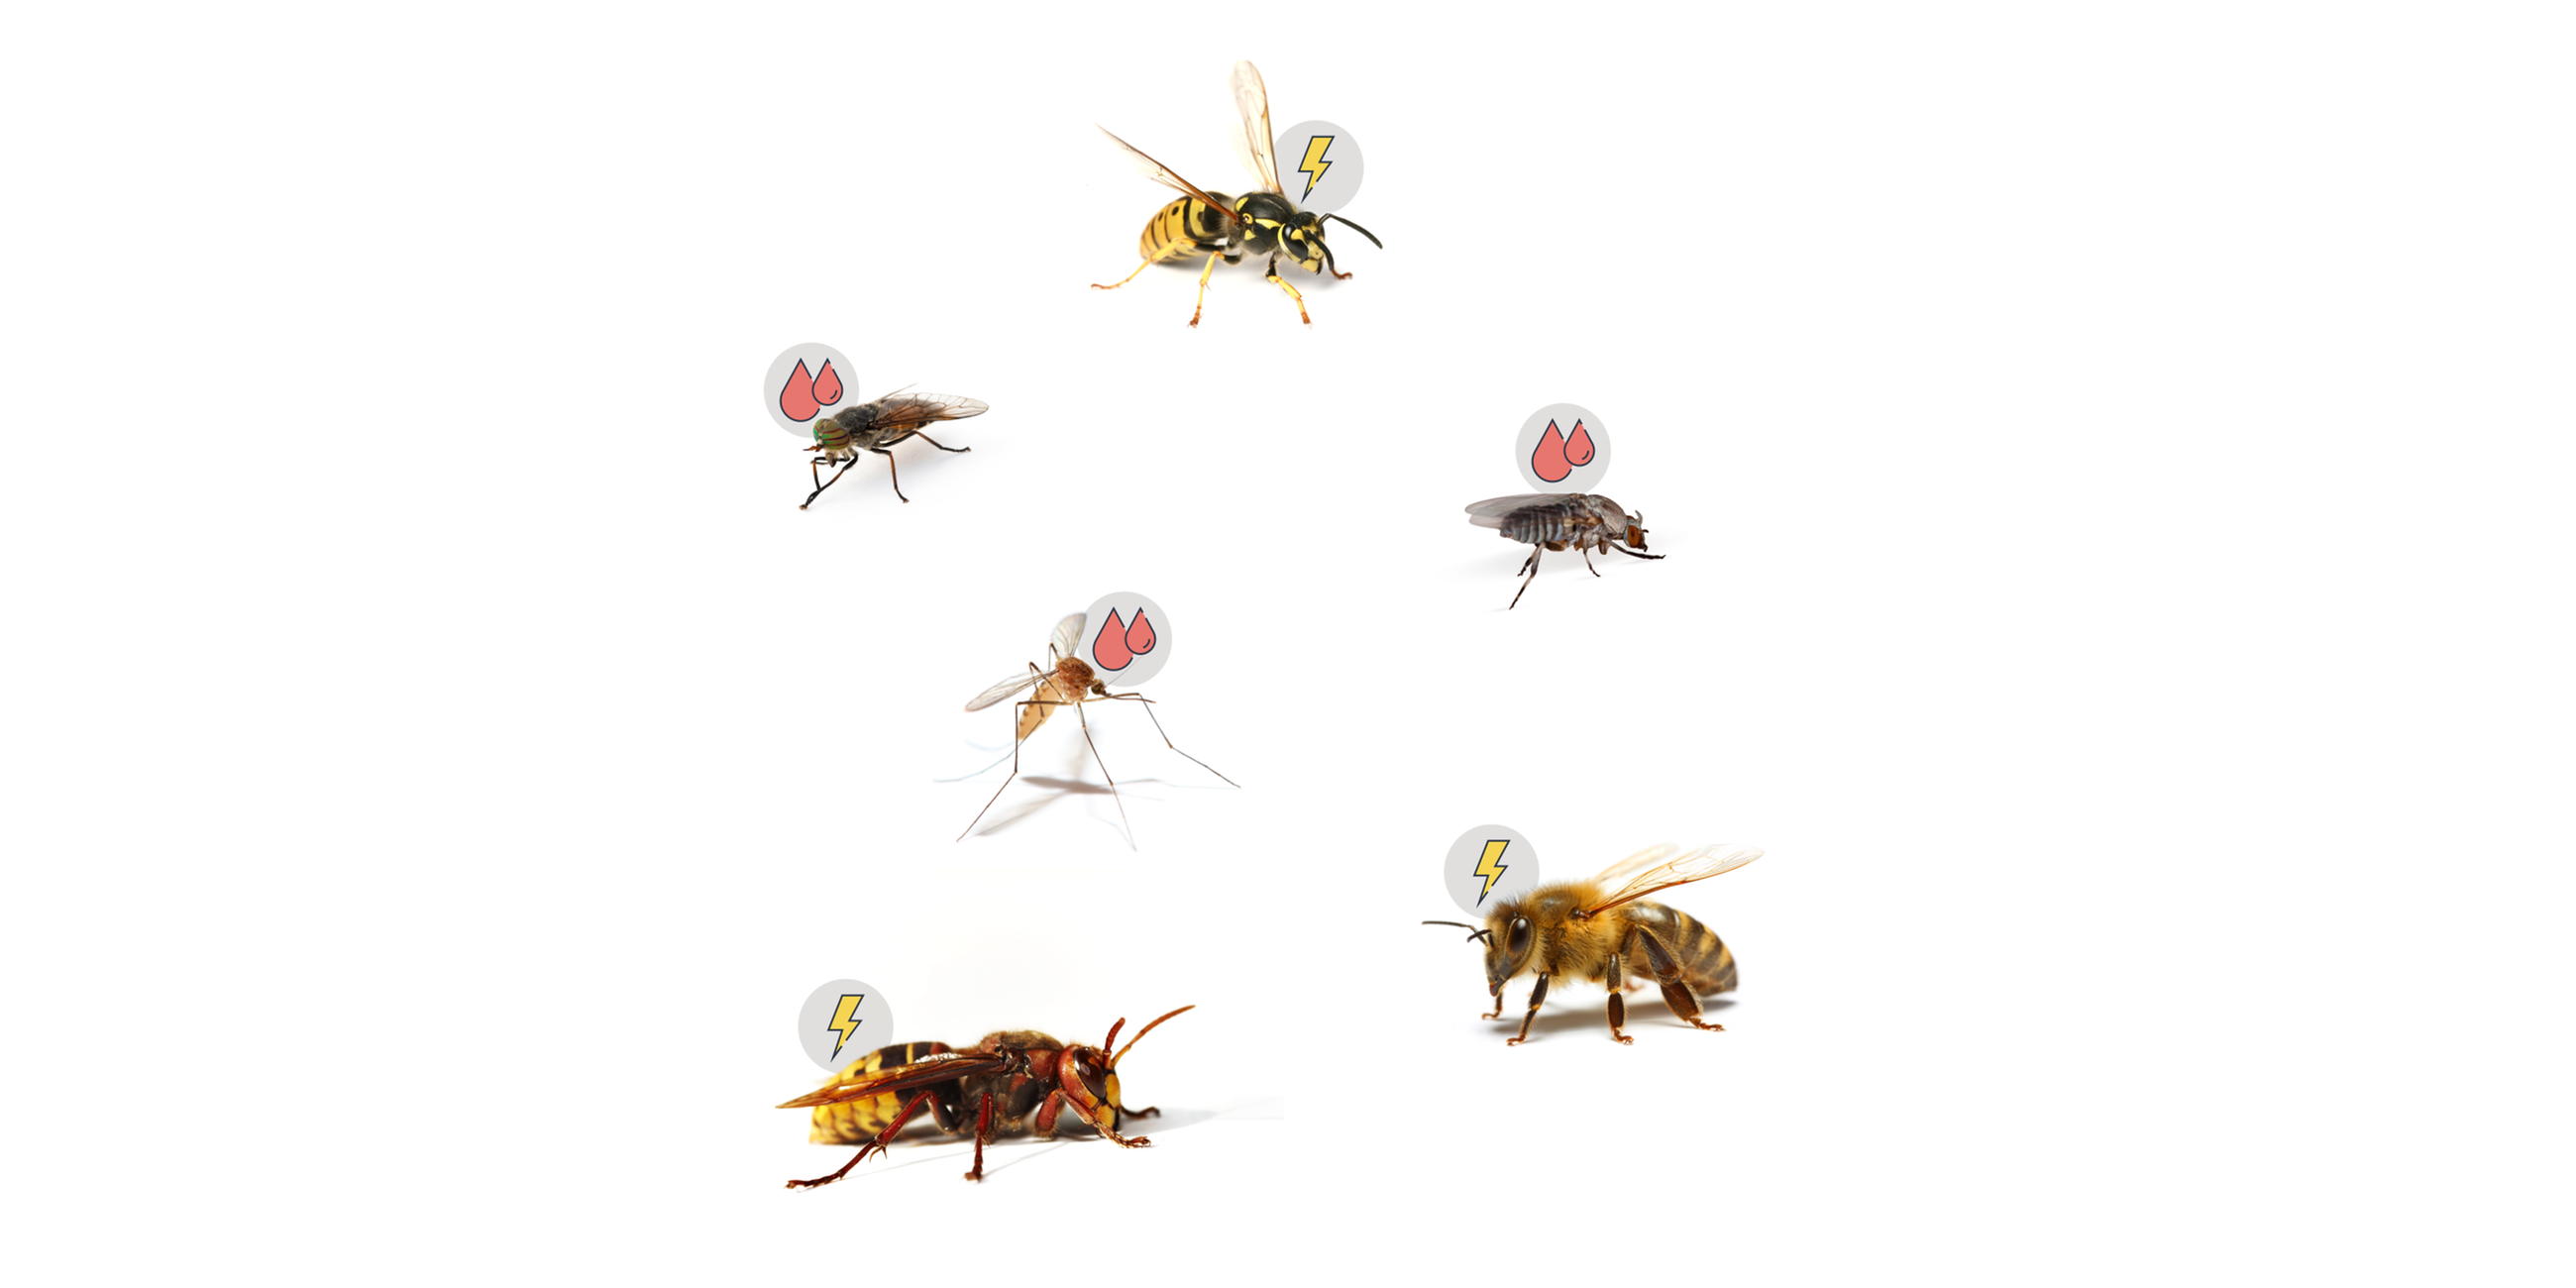 Stechmücken, Bremsen und Kriebelmücken stechen uns, um Blut zu saugen. Wenn Bienen, Wespen und Hornissen stechen, dann nur, um sich zu wehren.